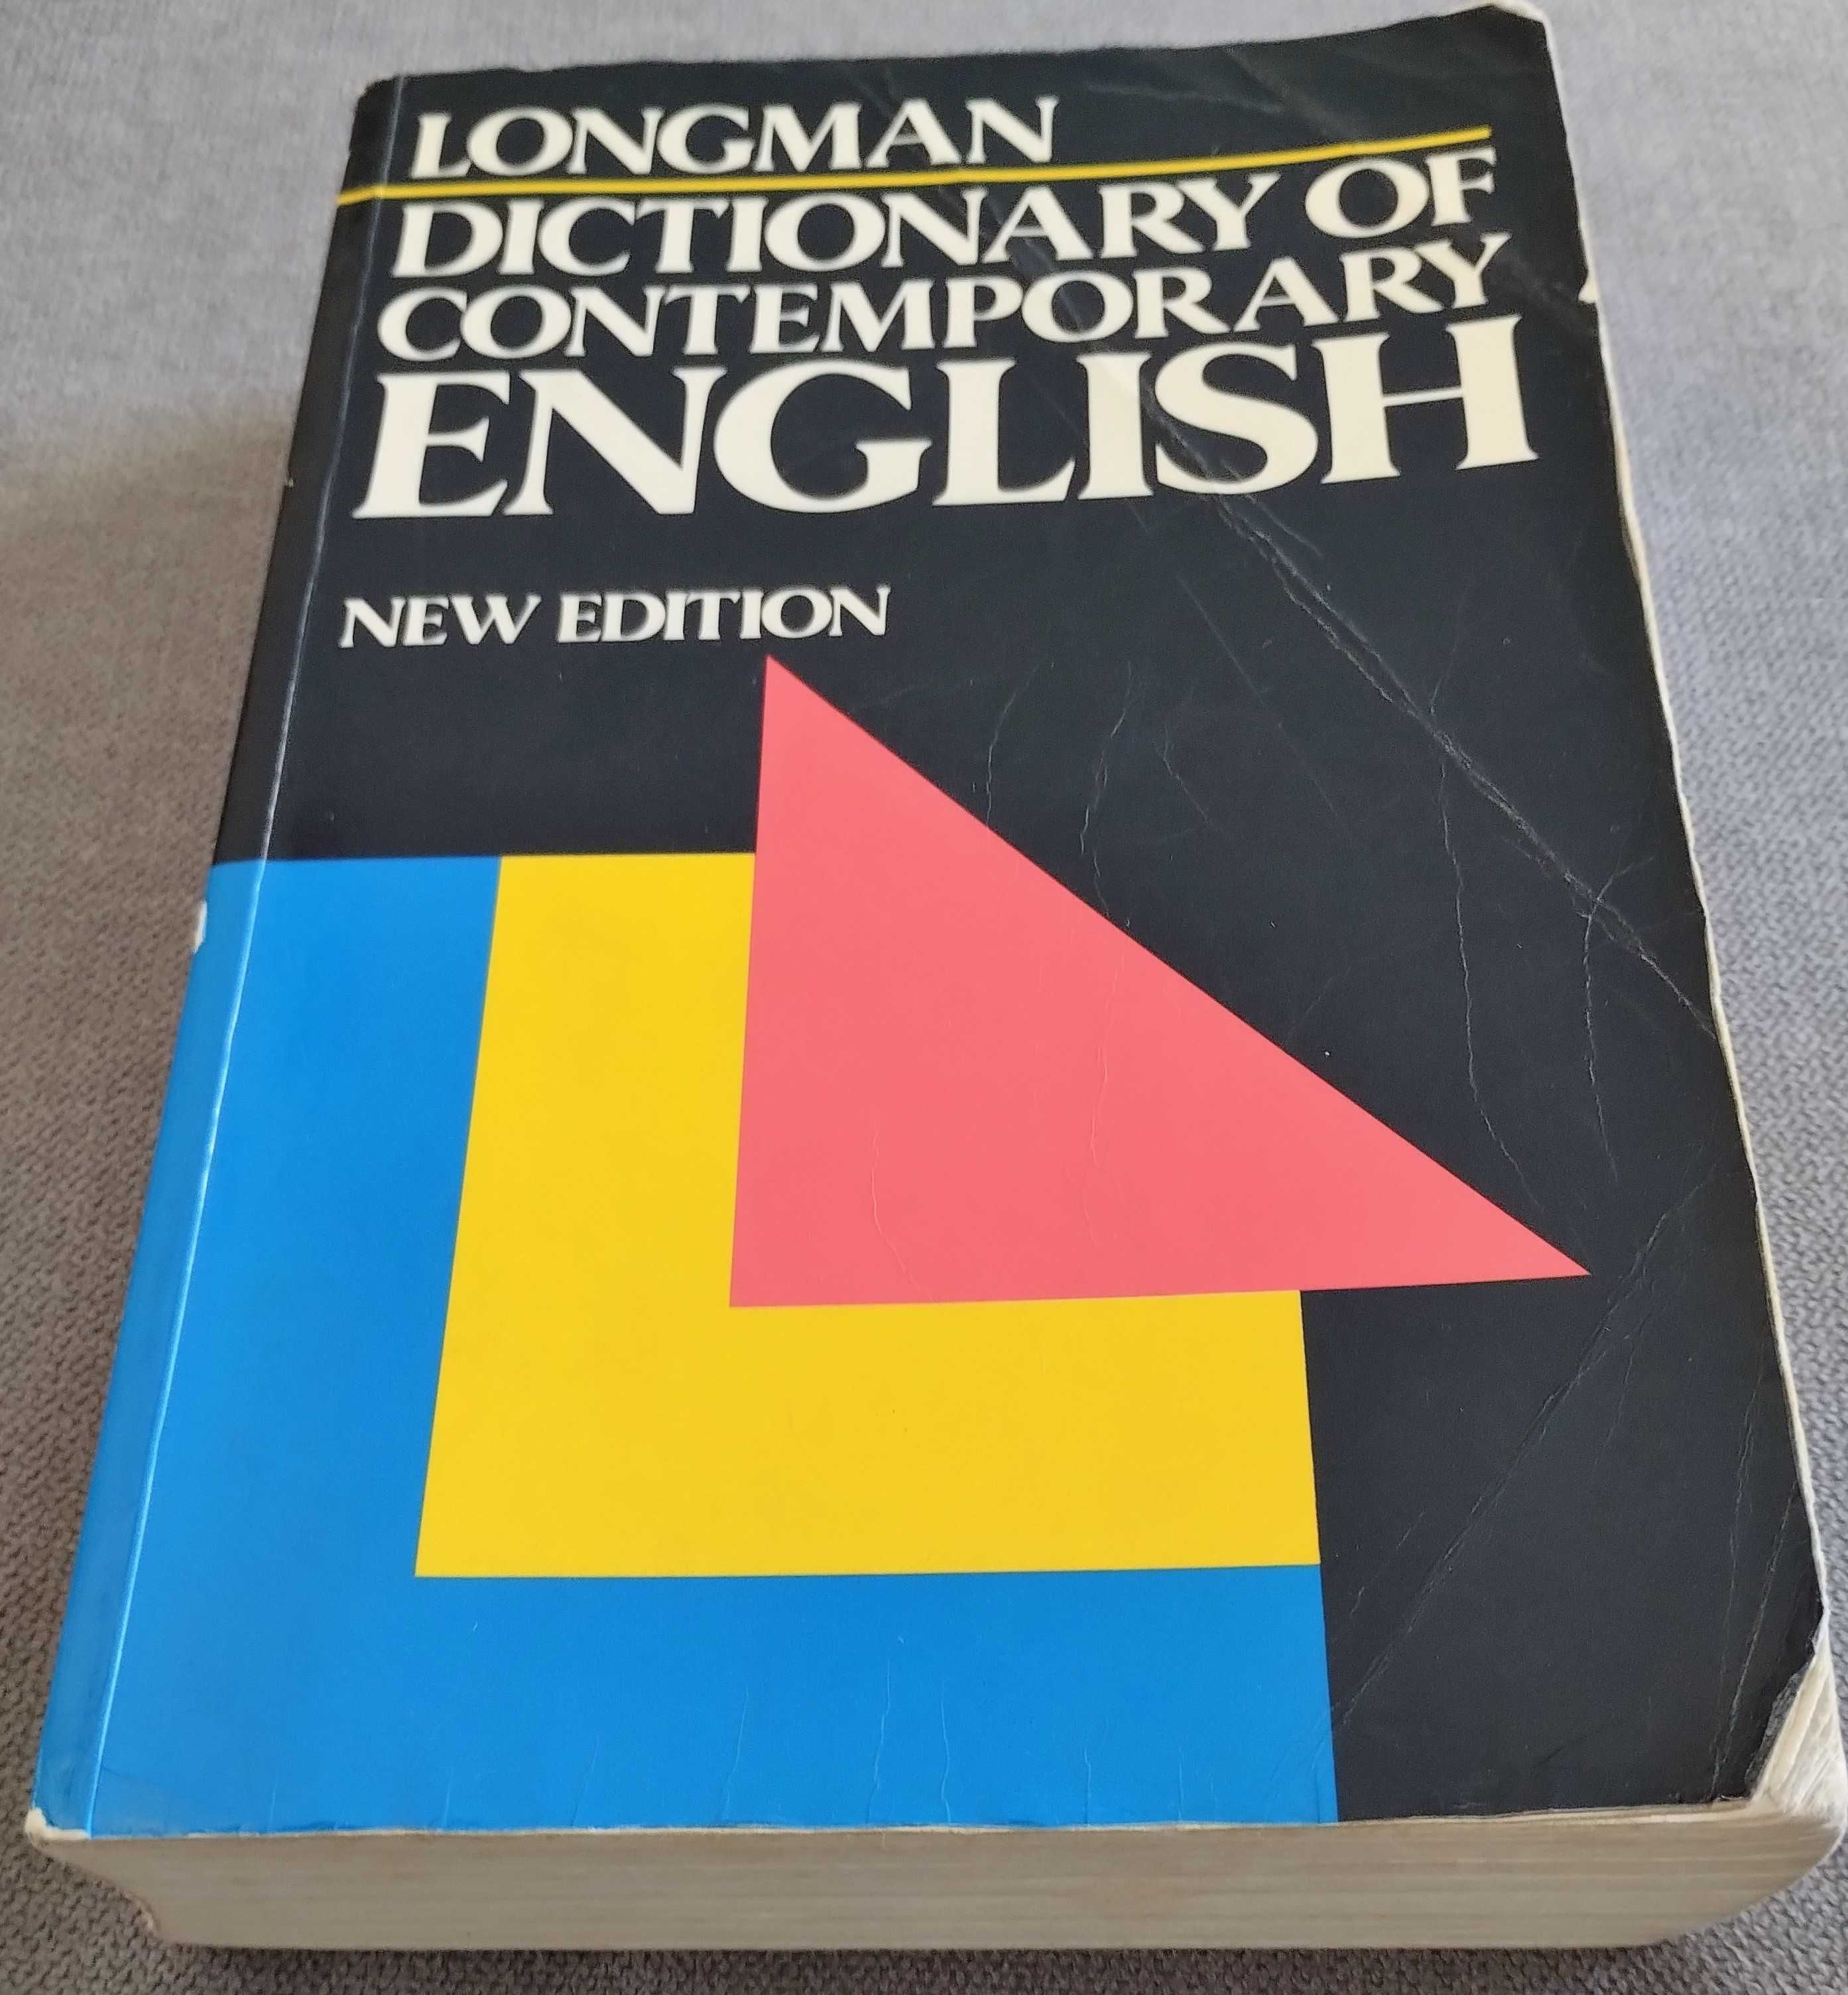 Dicionário Inglês - Inglês Longman-Dictionary of Contemporary English